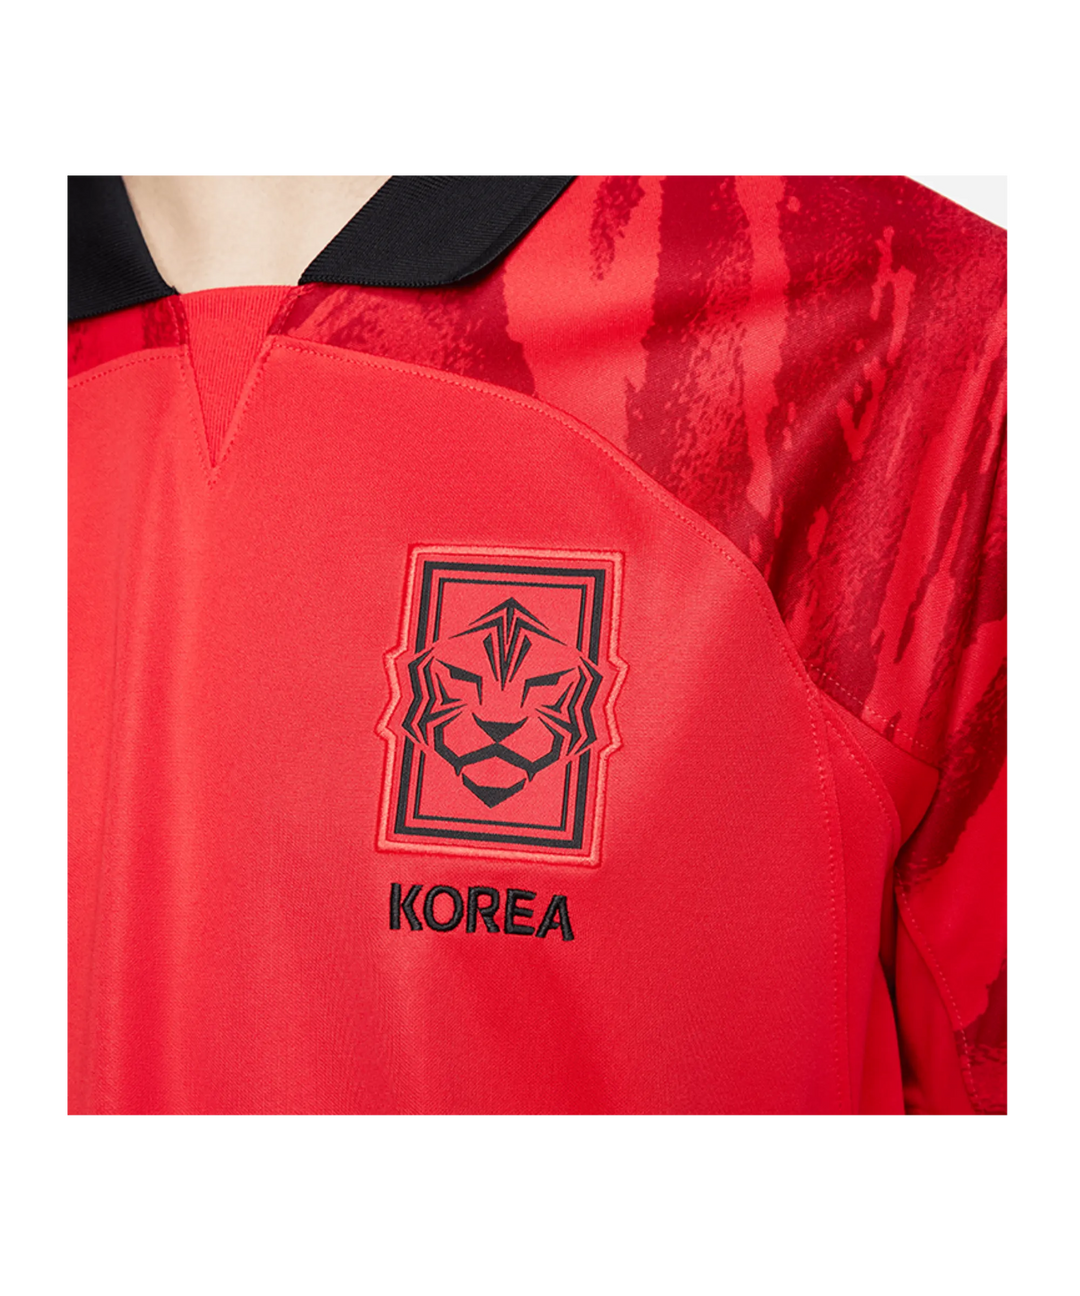 Camiseta de local Nike Stadium de Corea del Sur para hombre